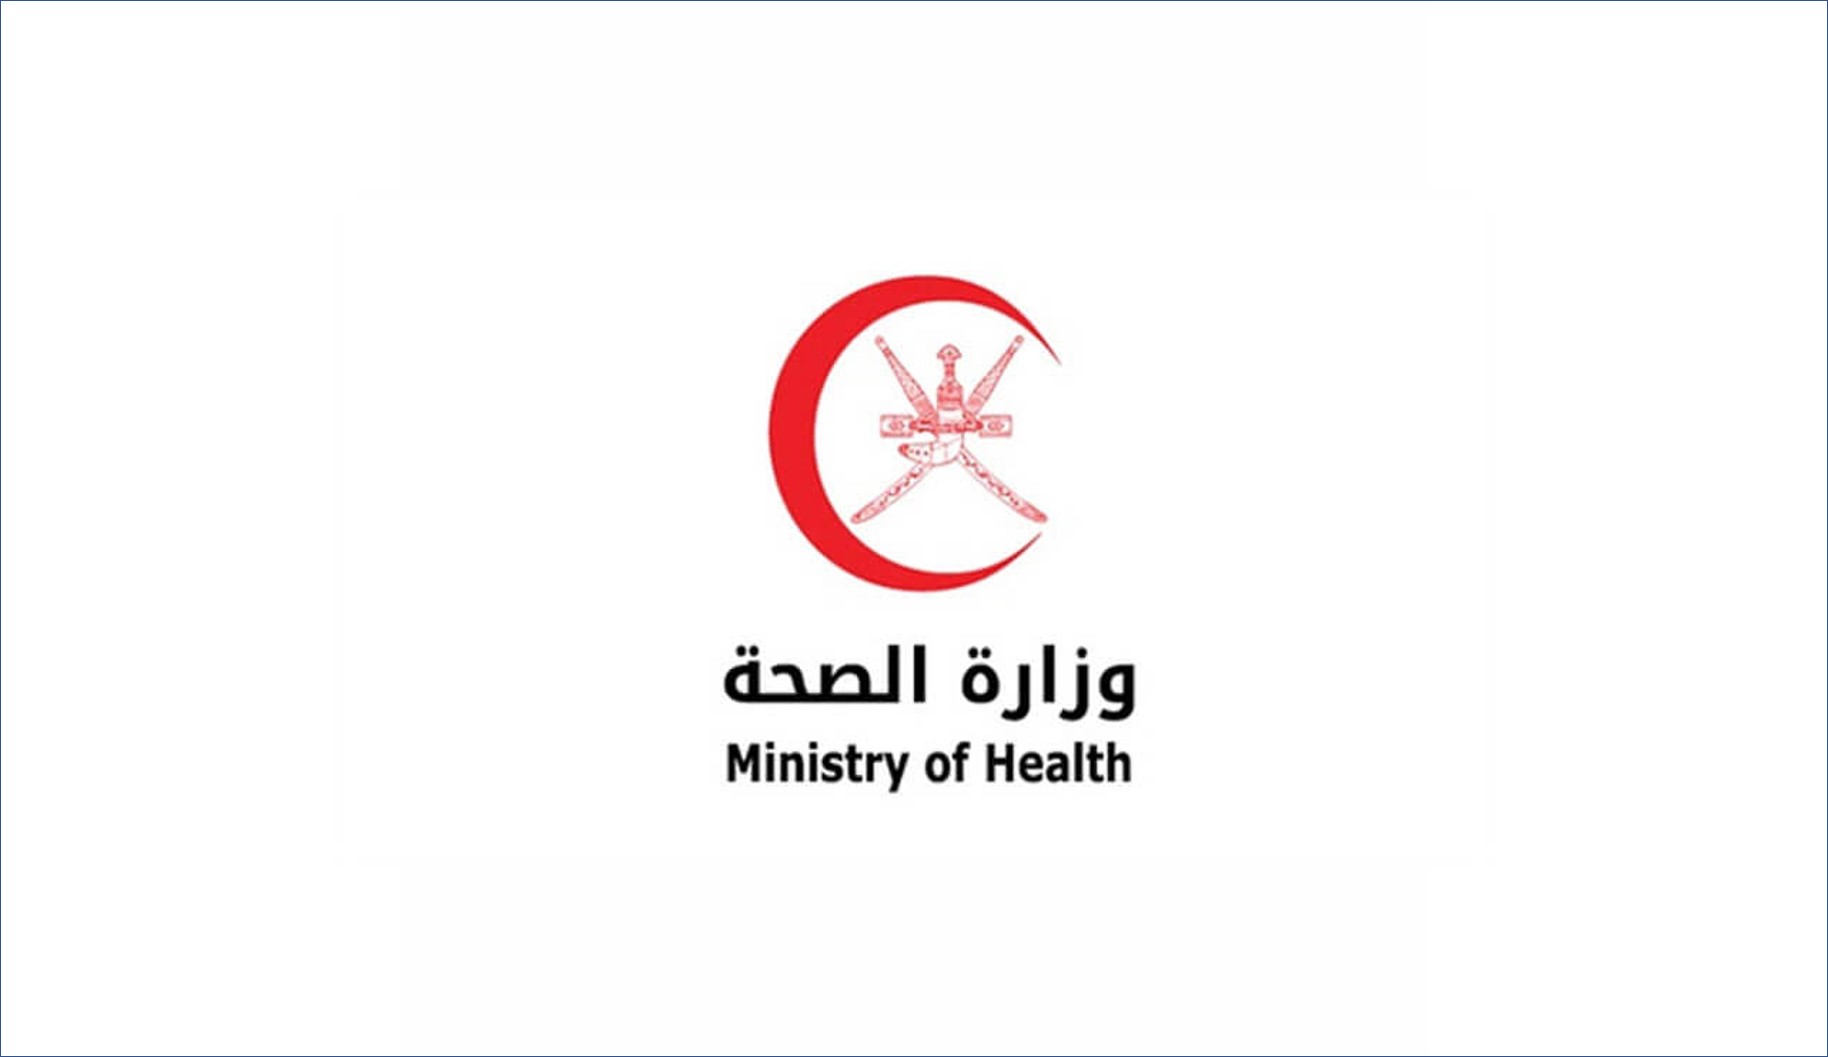 وزارة الصحة العمانية تعلن عن 23 وظيفة شاغرة